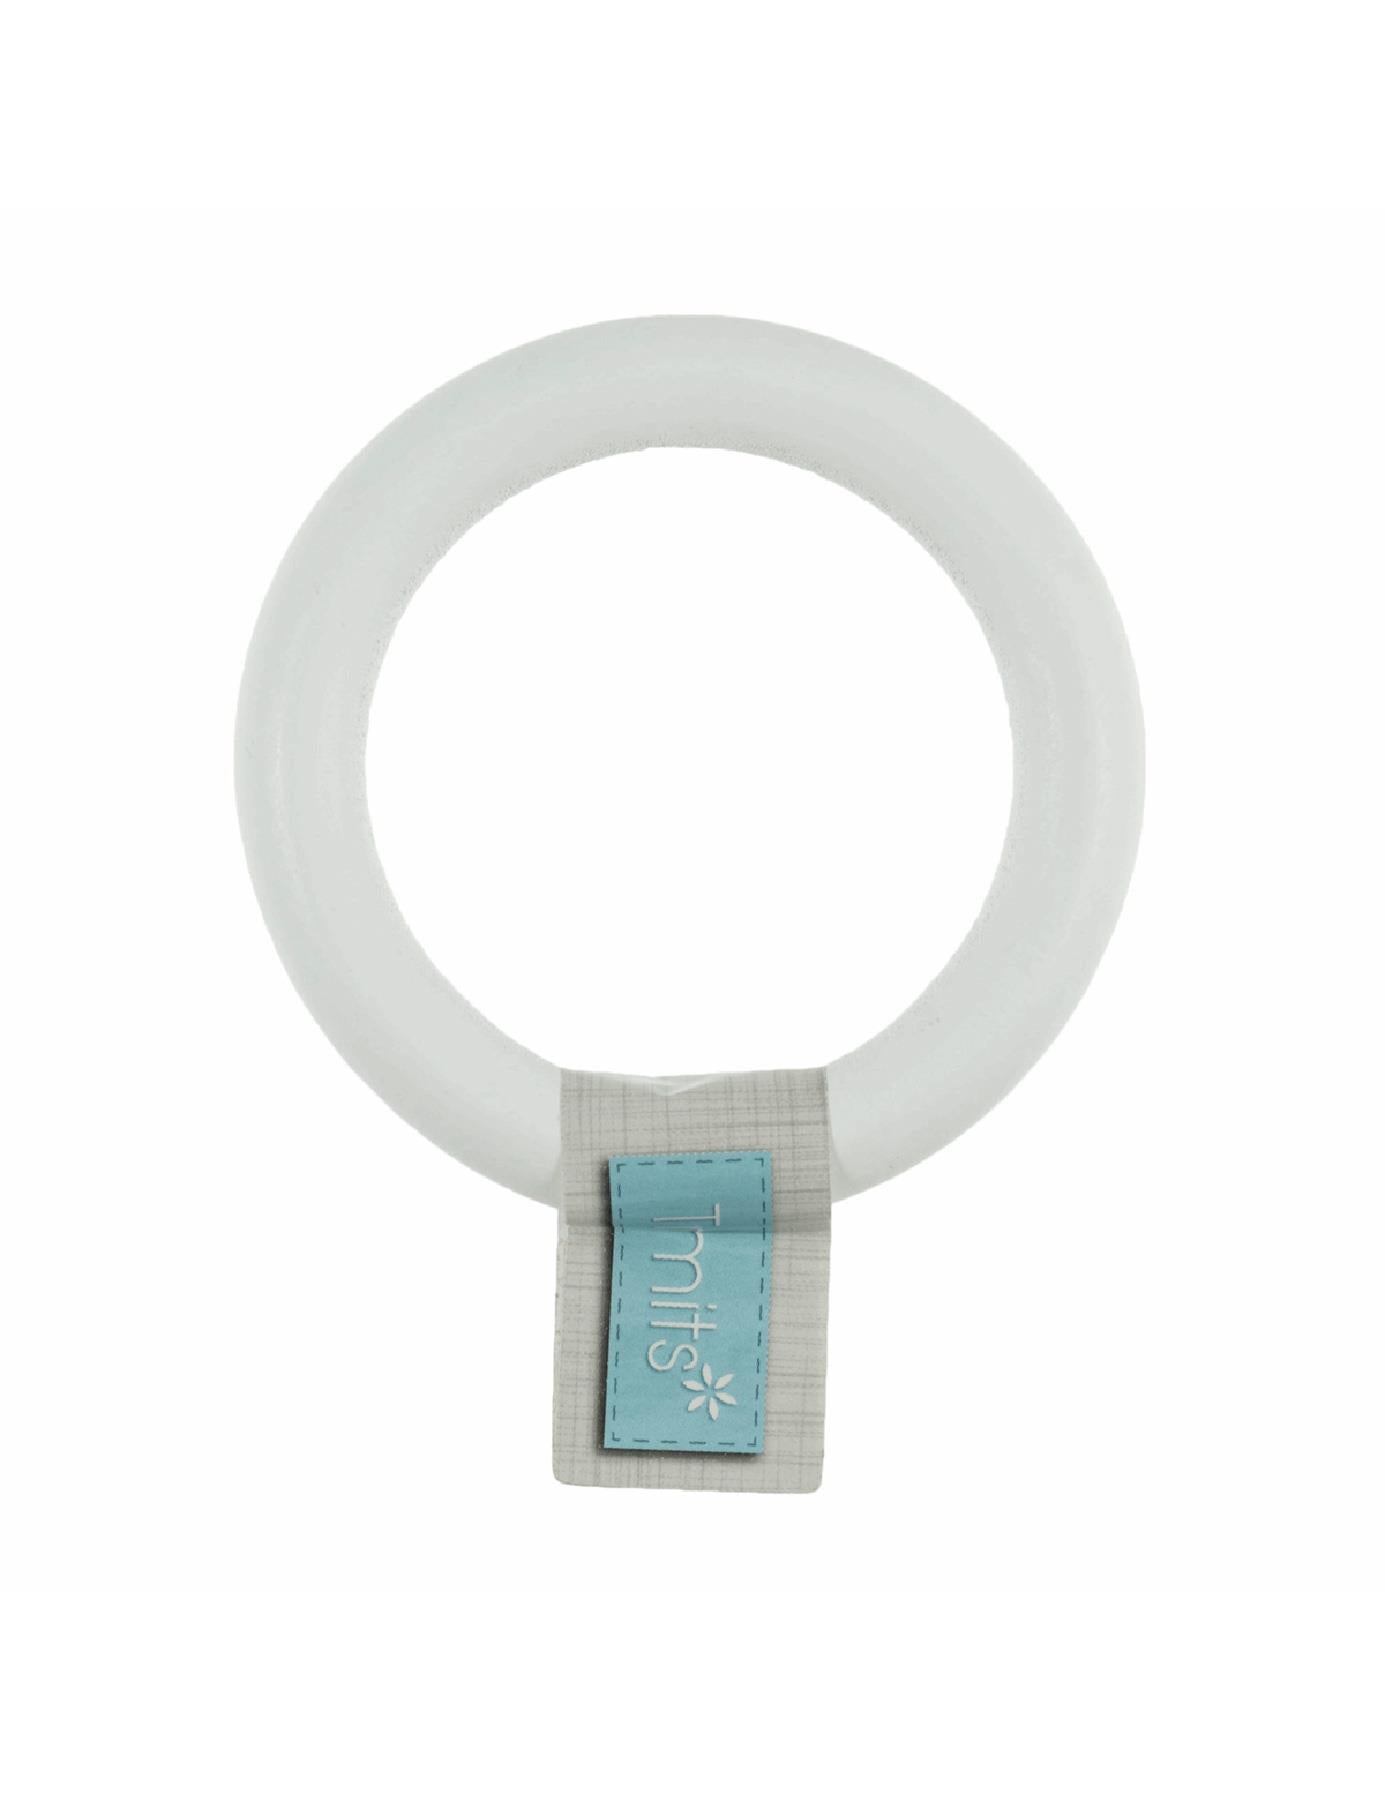 Trimits Birch Craft Ring (TRH47) white round macrame hanger - 7cm